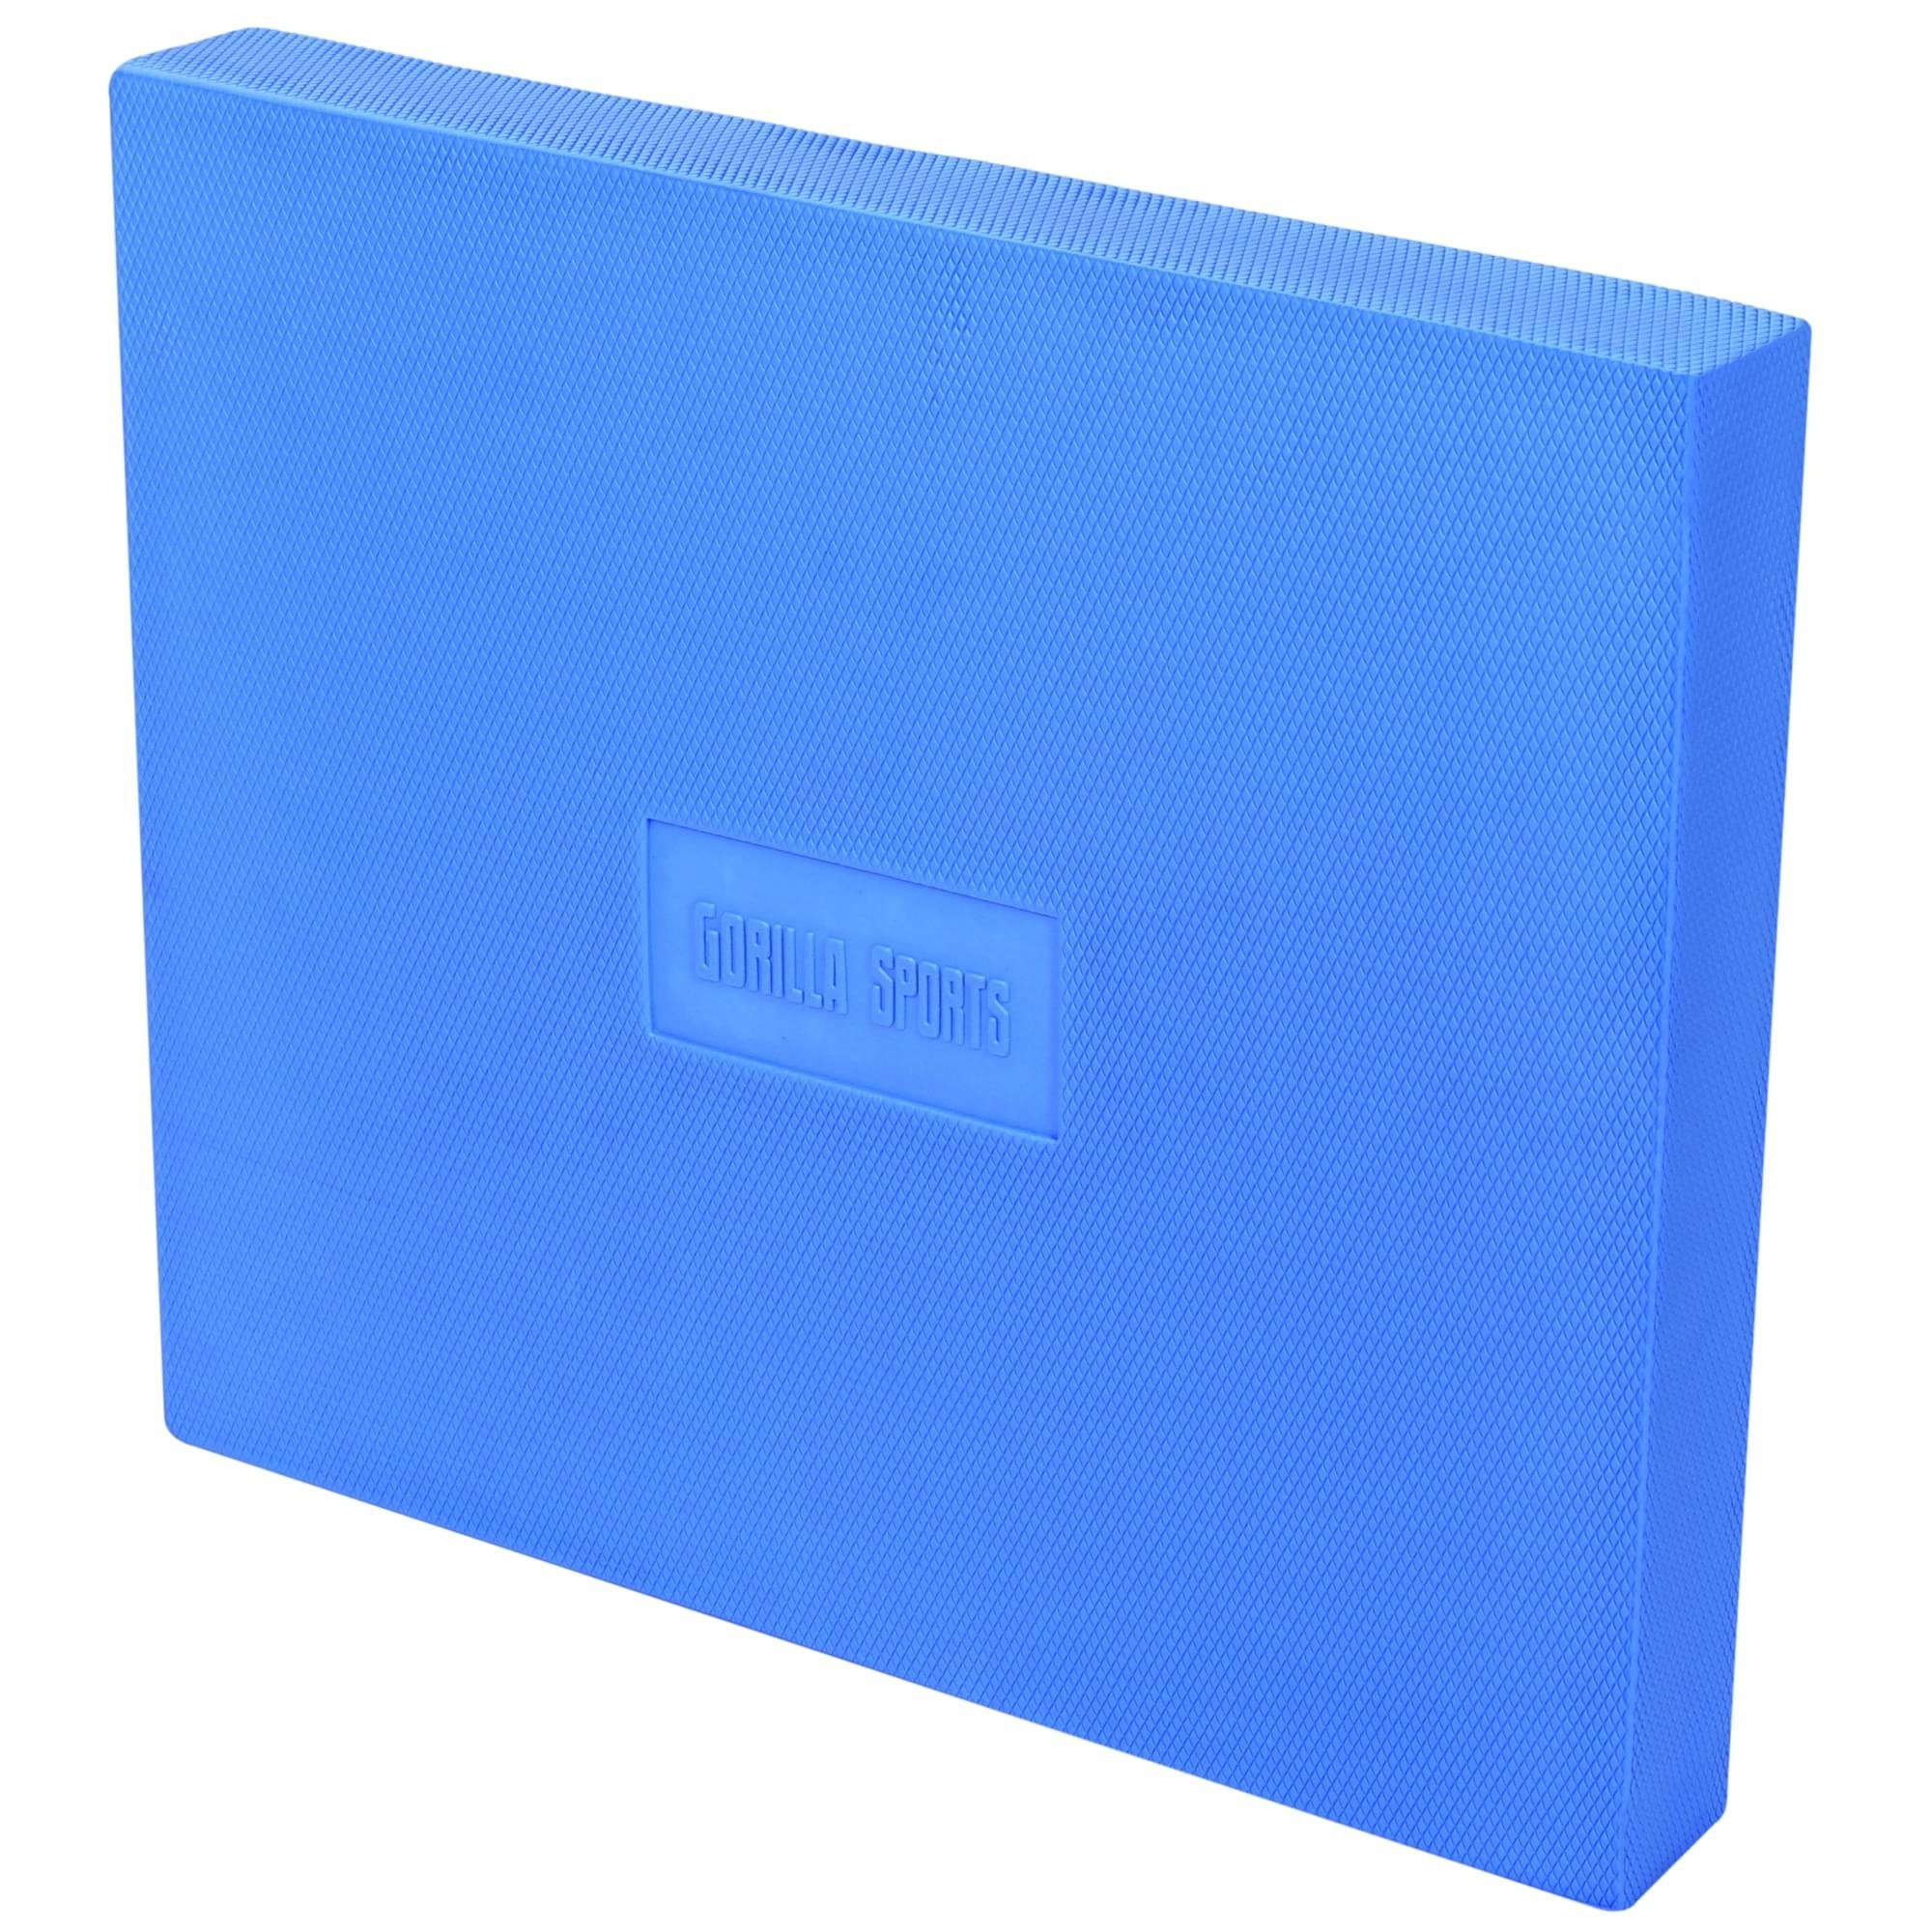 GORILLA SPORTS Balance Pad Balance Pad, 47x40x5,5cm, für Gleichgewicht und Koordination, Farbwahl Blau